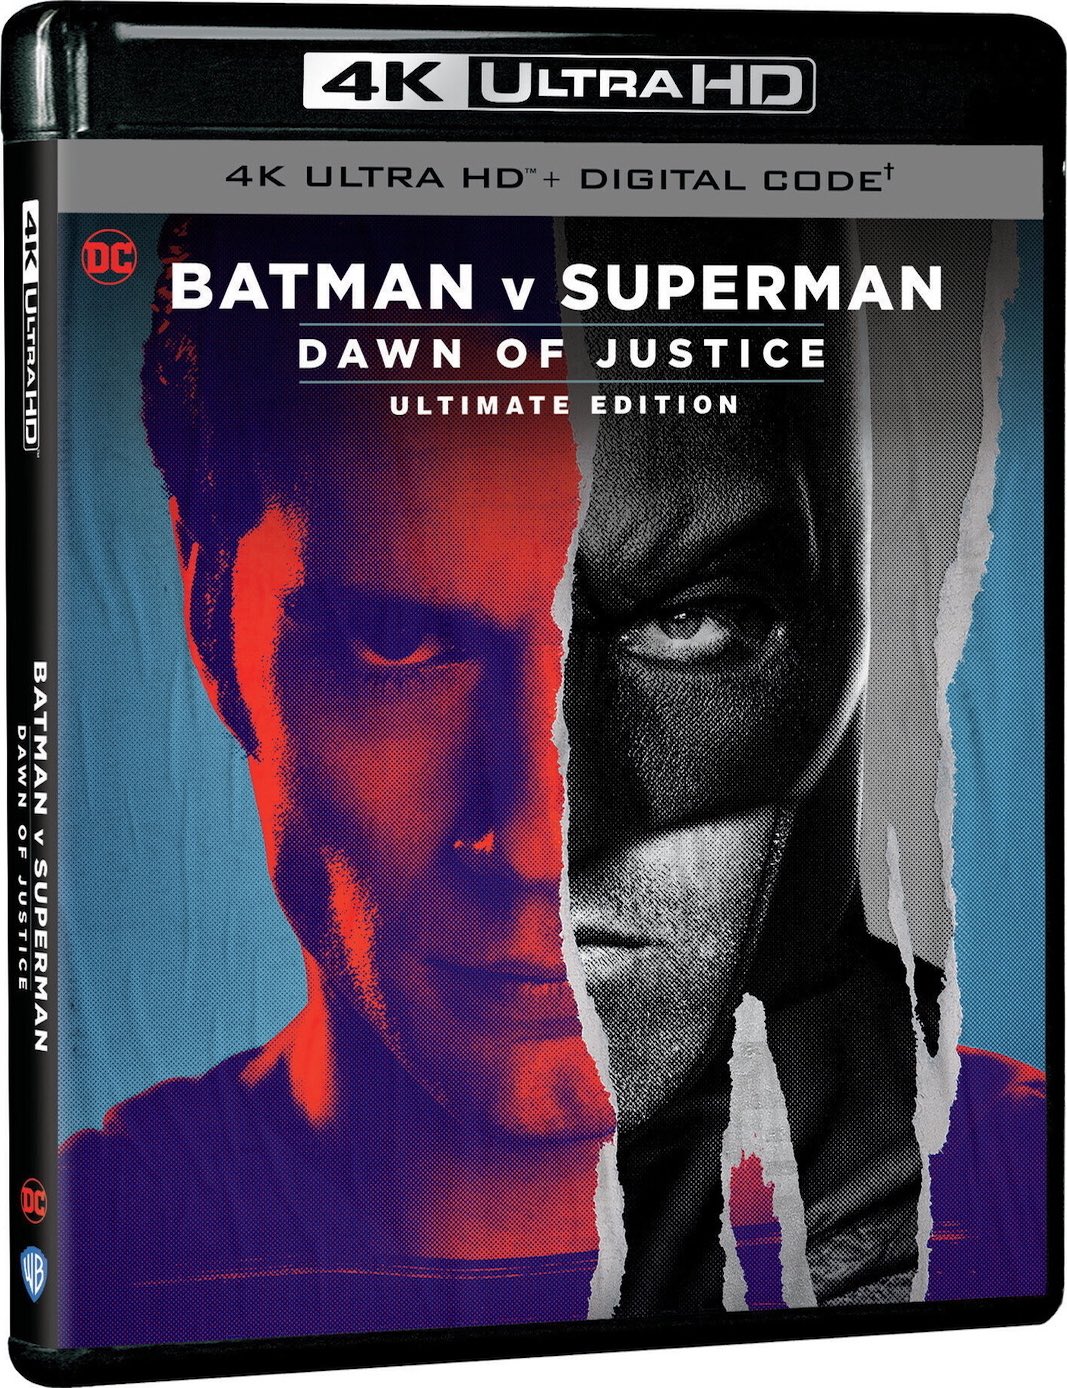 BATMAN VS SUPERMAN ULTIMATE EDITION - CINE 3D MANIA